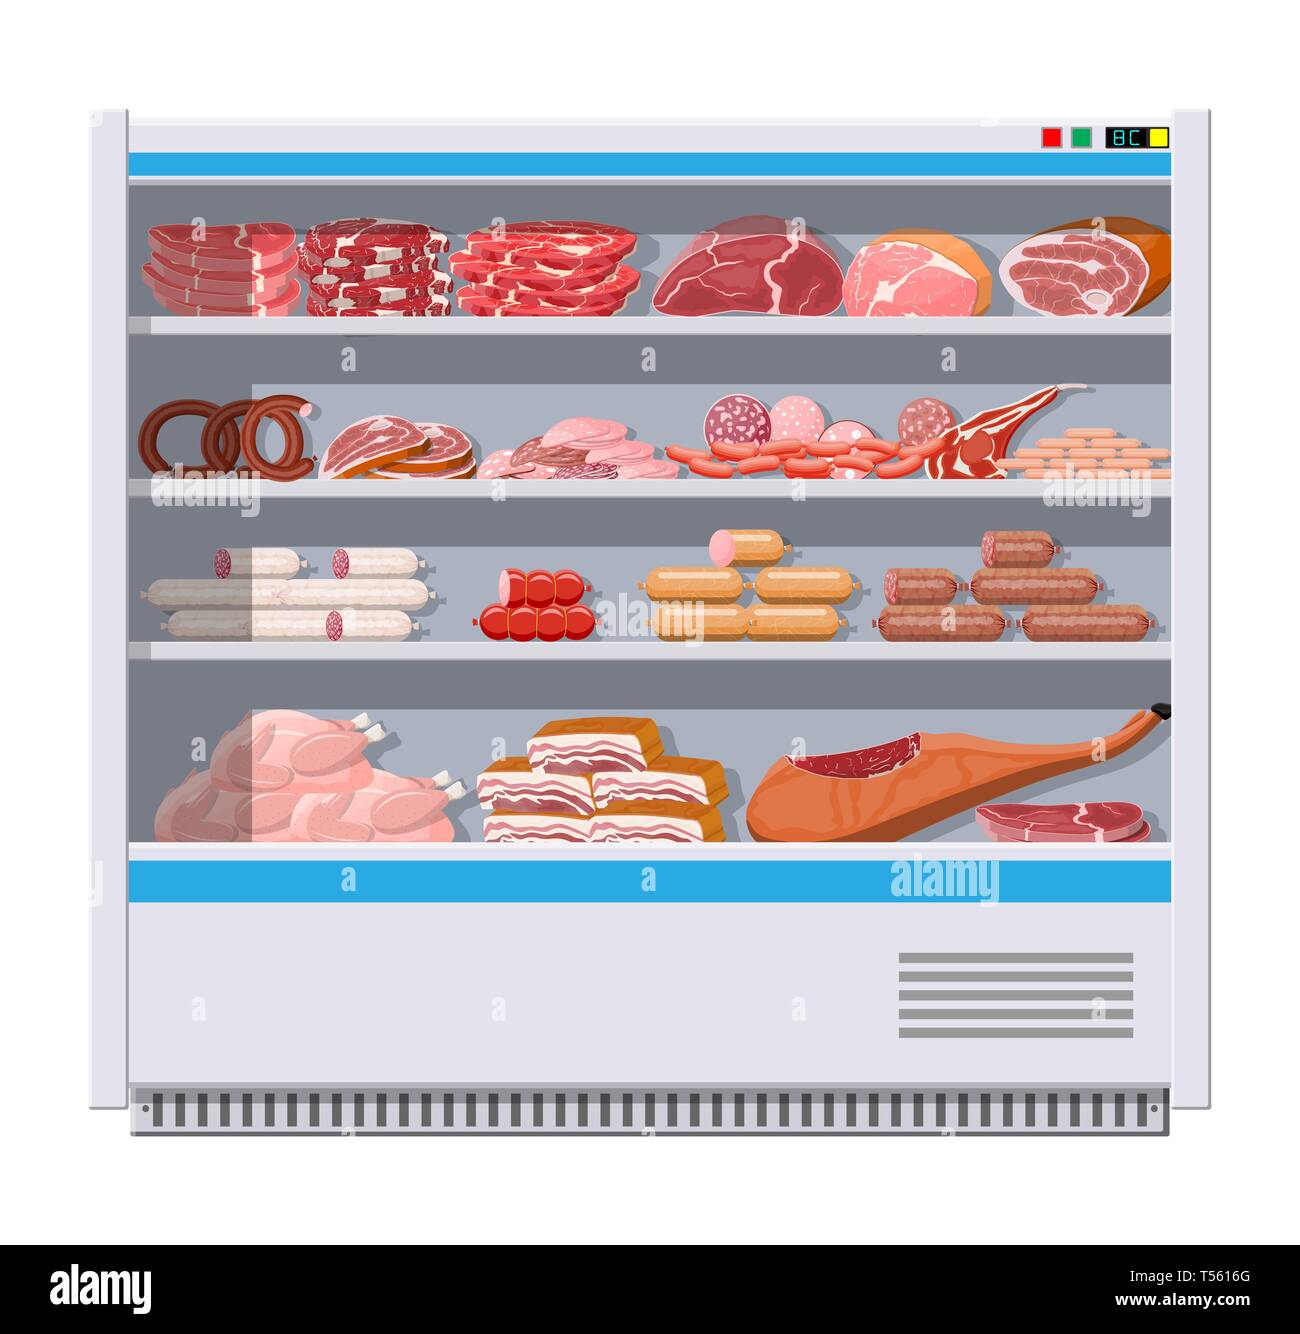 Fleischerzeugnisse im Supermarkt einen Kühlschrank. Fleisch speichern Metzgerei präsentieren. Wurstscheiben Produkt. Feinkost gastronomische Produkt von Rindfleisch Schweinefleisch c Stock Vektor